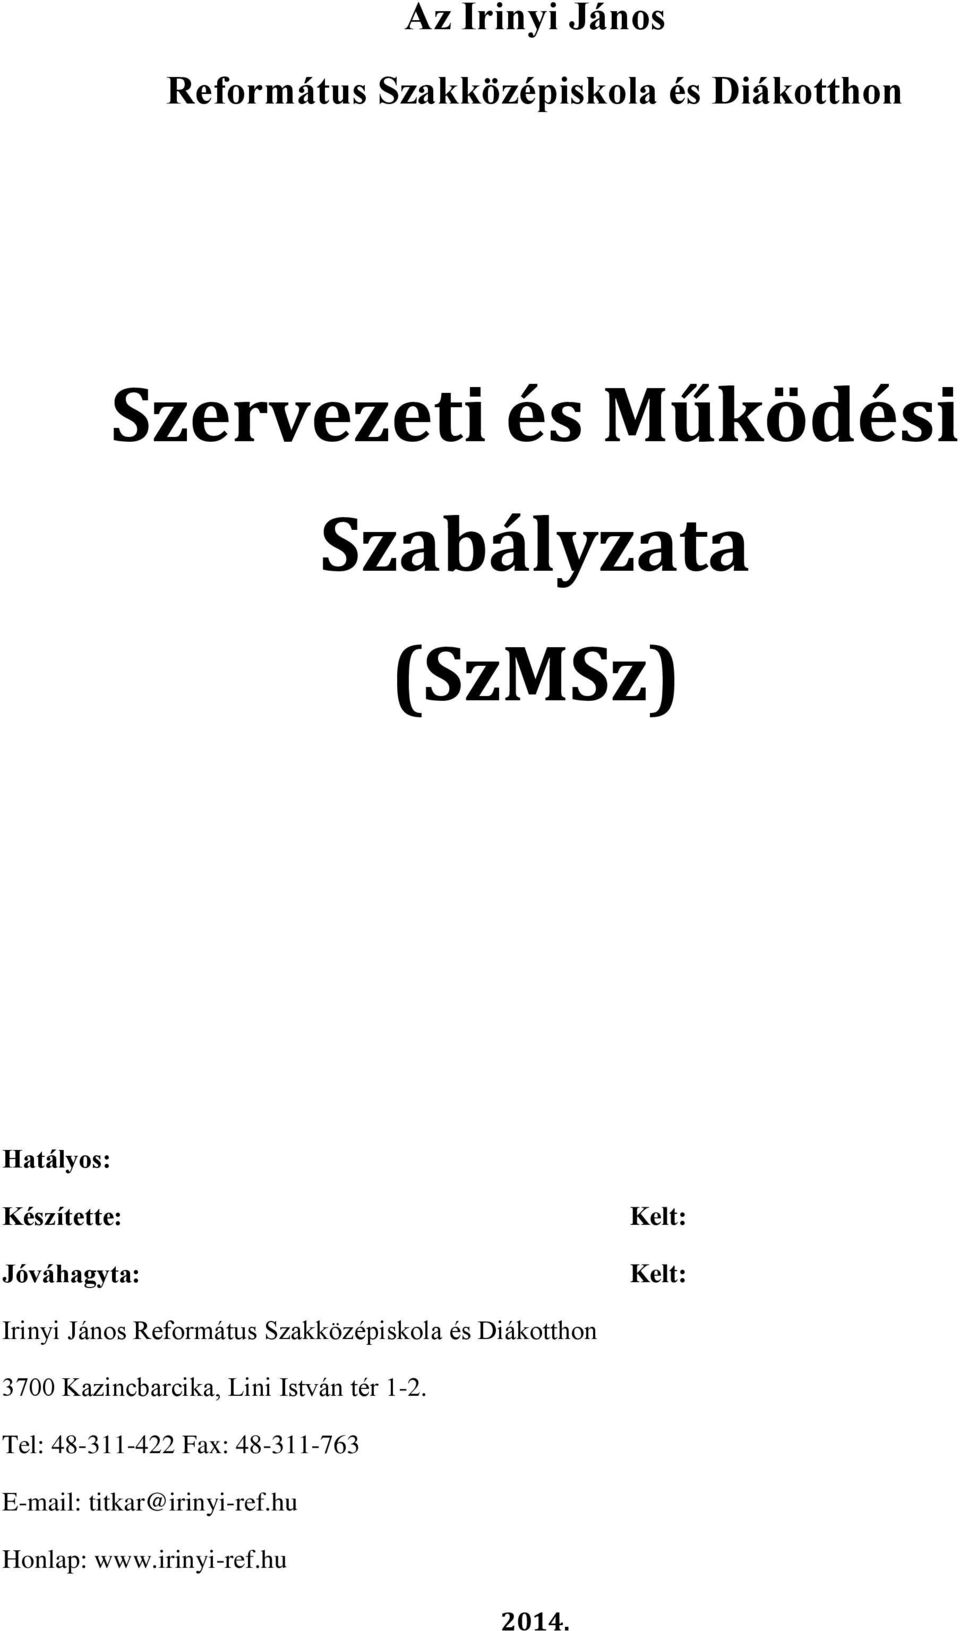 Kelt: Kelt: 3700 Kazincbarcika, Lini István tér 1-2.